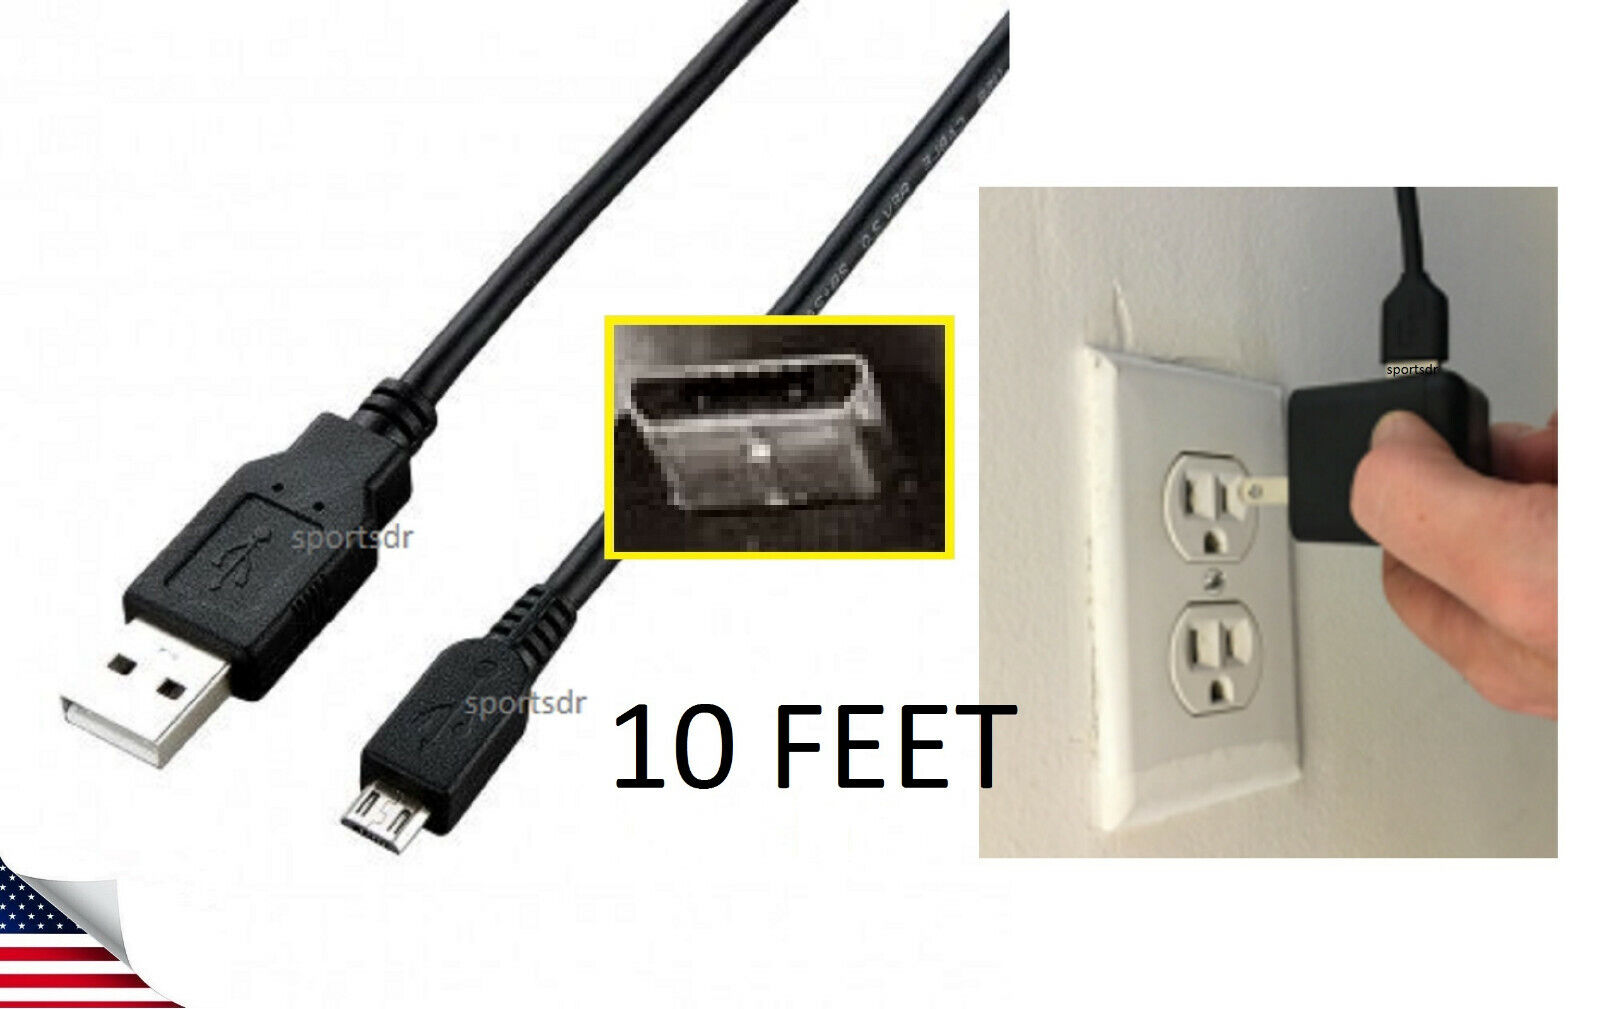 USB Charger Cord Power Cable for Nabi 1 I & 2 II NABI2-NV7A NABI2-NVA Kid Tablet